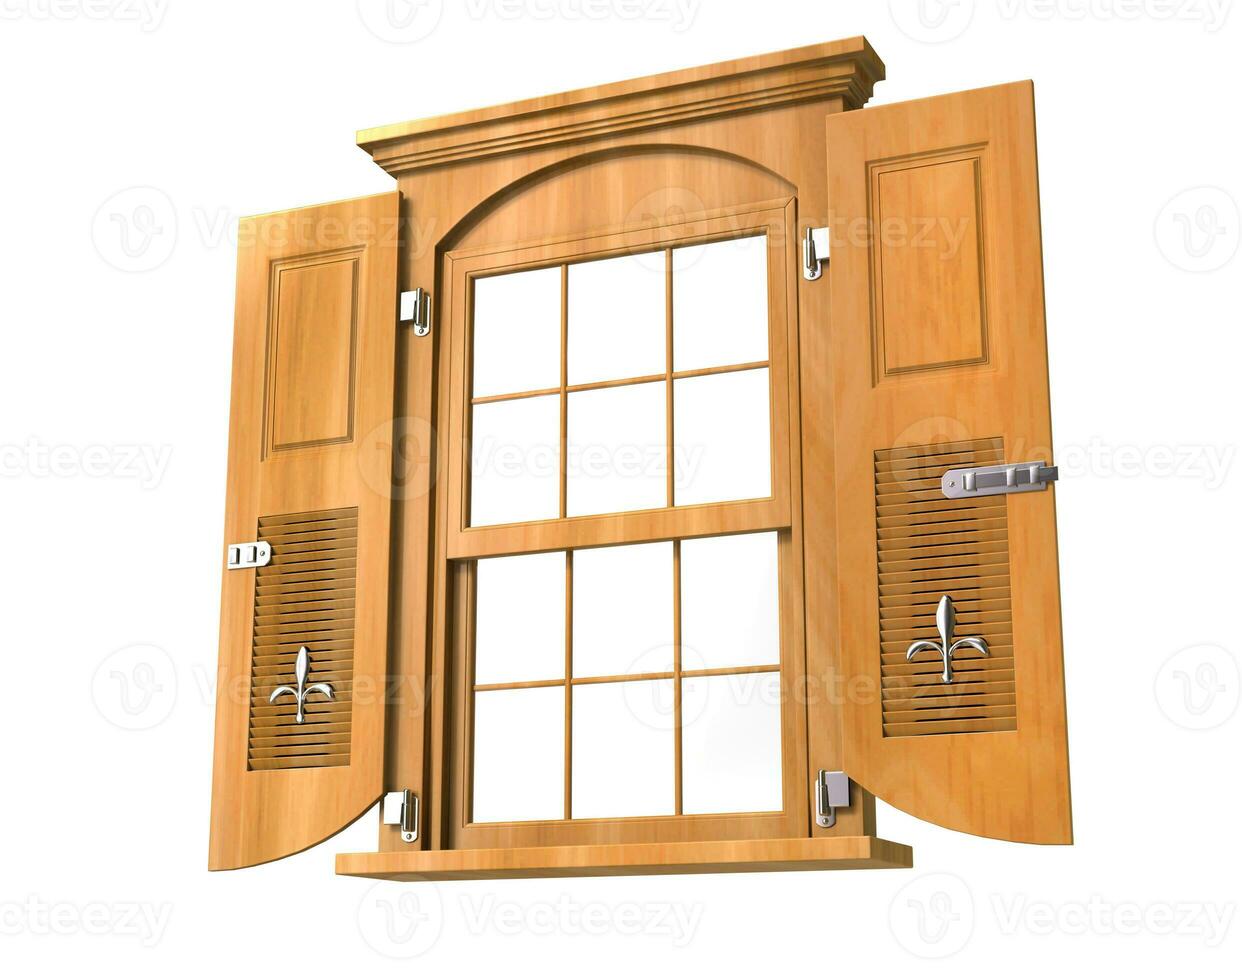 trä- fönster med dörrar - låg vinkel foto